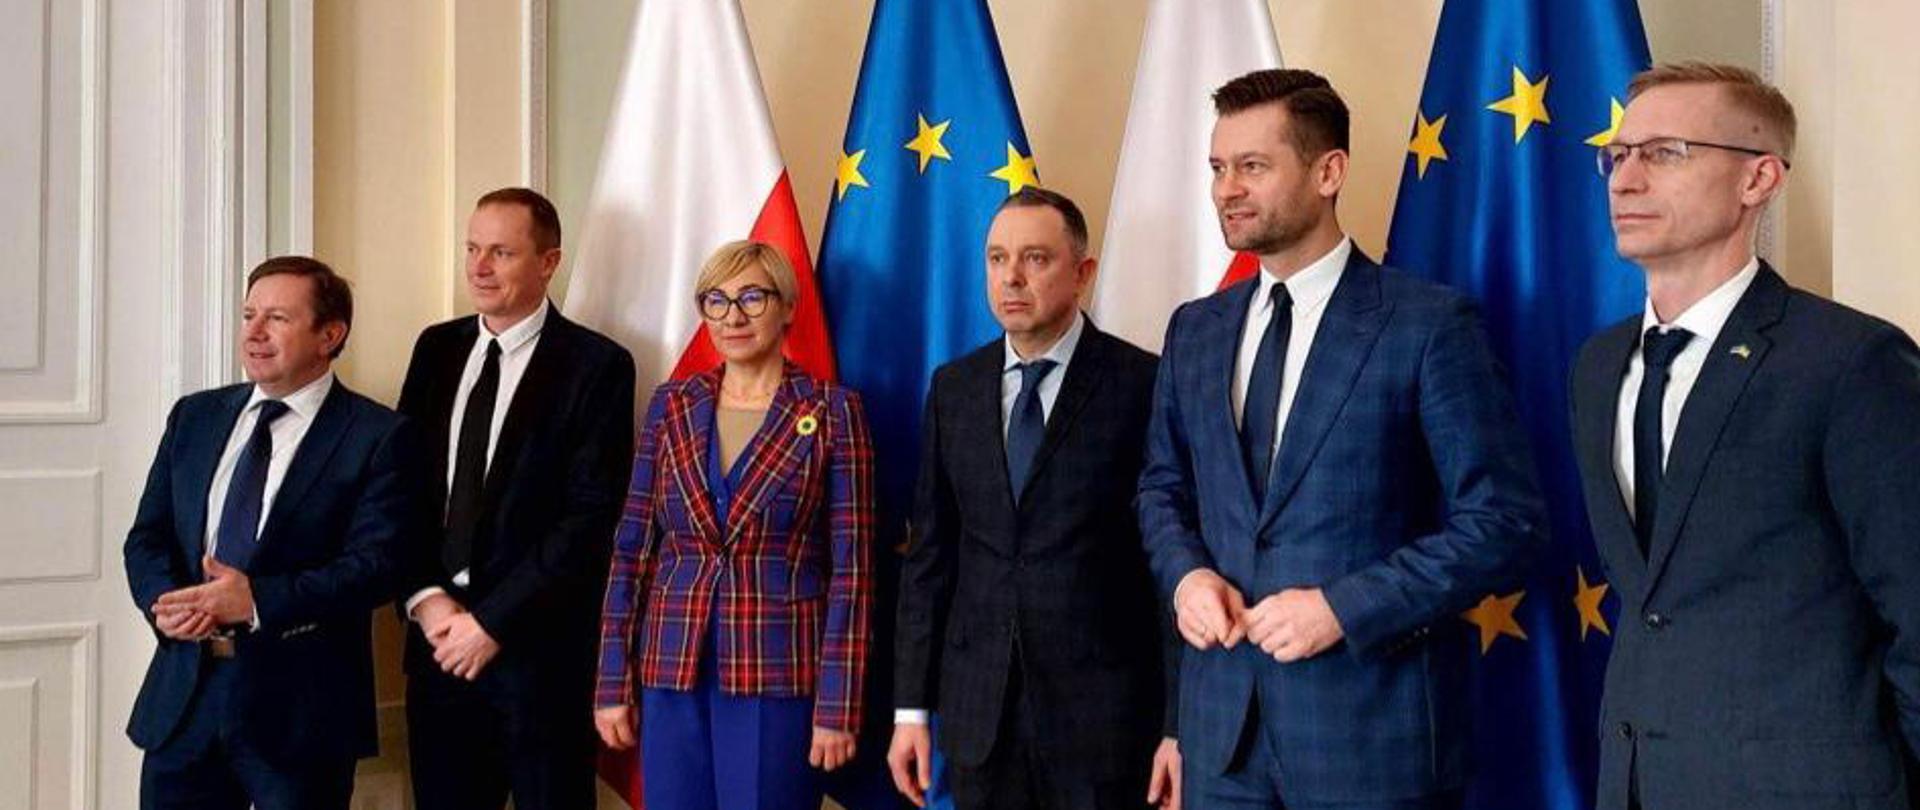 Na zdjęciu znajduje się sześcioro elegancko ubranych osób. Osoby te pozują na tle flag Polski i Unii Europejskiej.